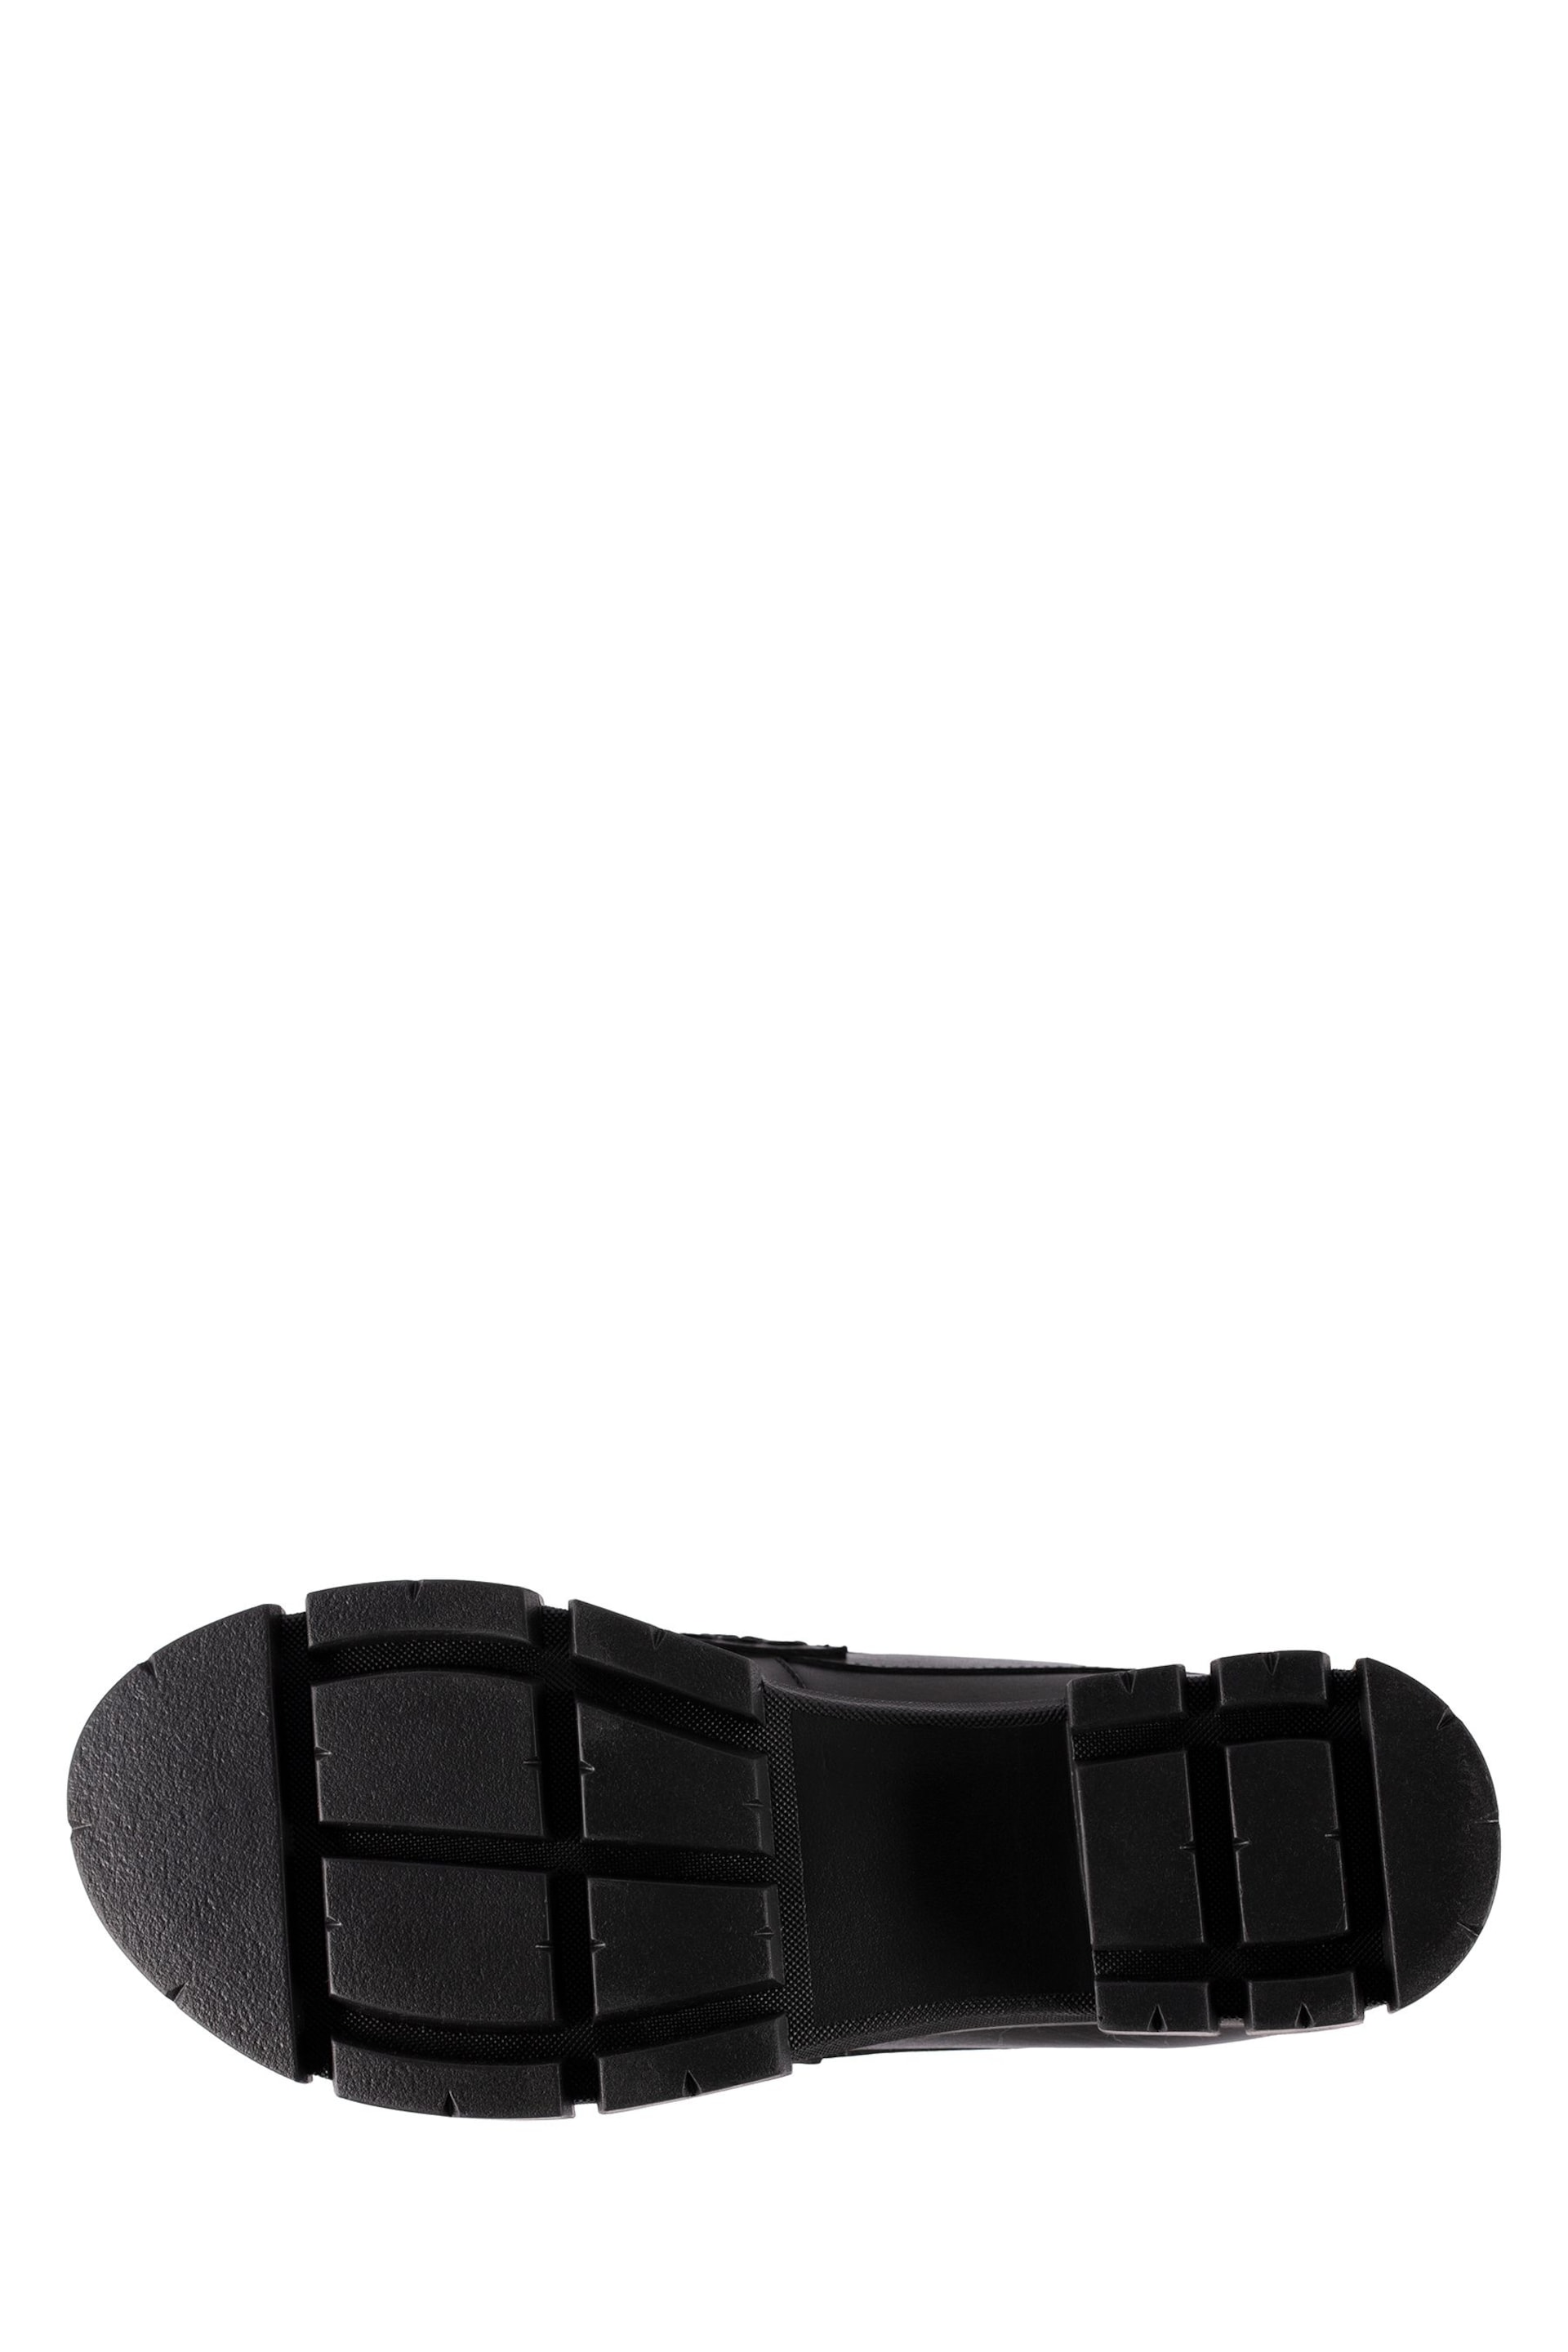 Clarks Black Teala Loafer Shoes - Image 7 of 7